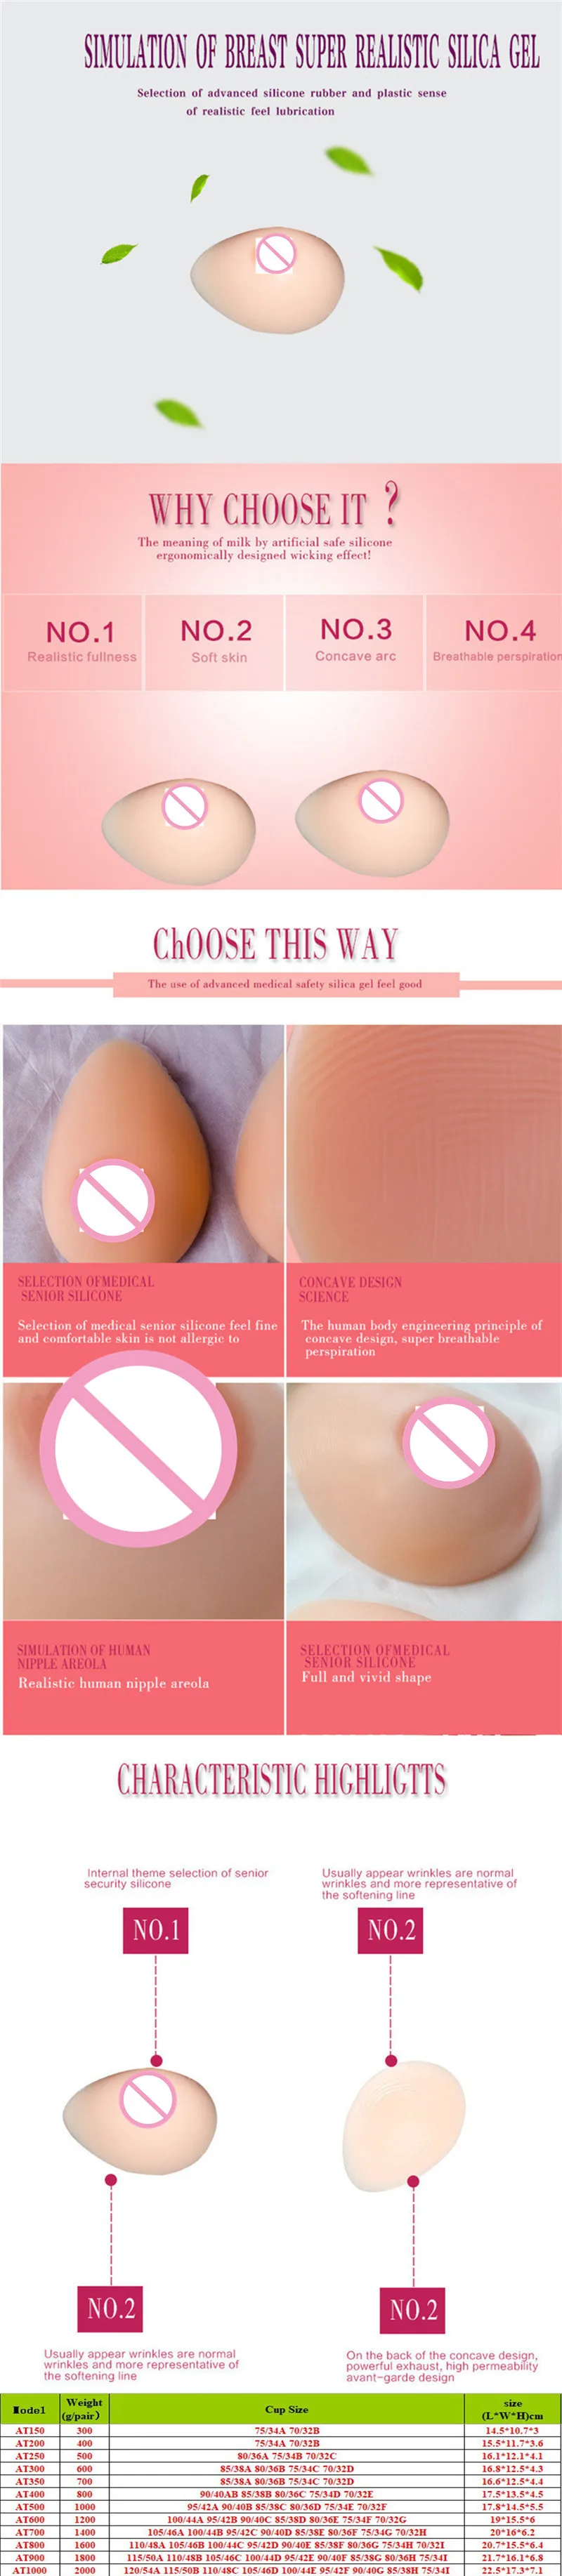 Kunstige Falske Bryster Puder Realistisk Silikone Bryst Former Protese for Mastektomi Kvinder Dragqueen Transvestit Transseksuelle